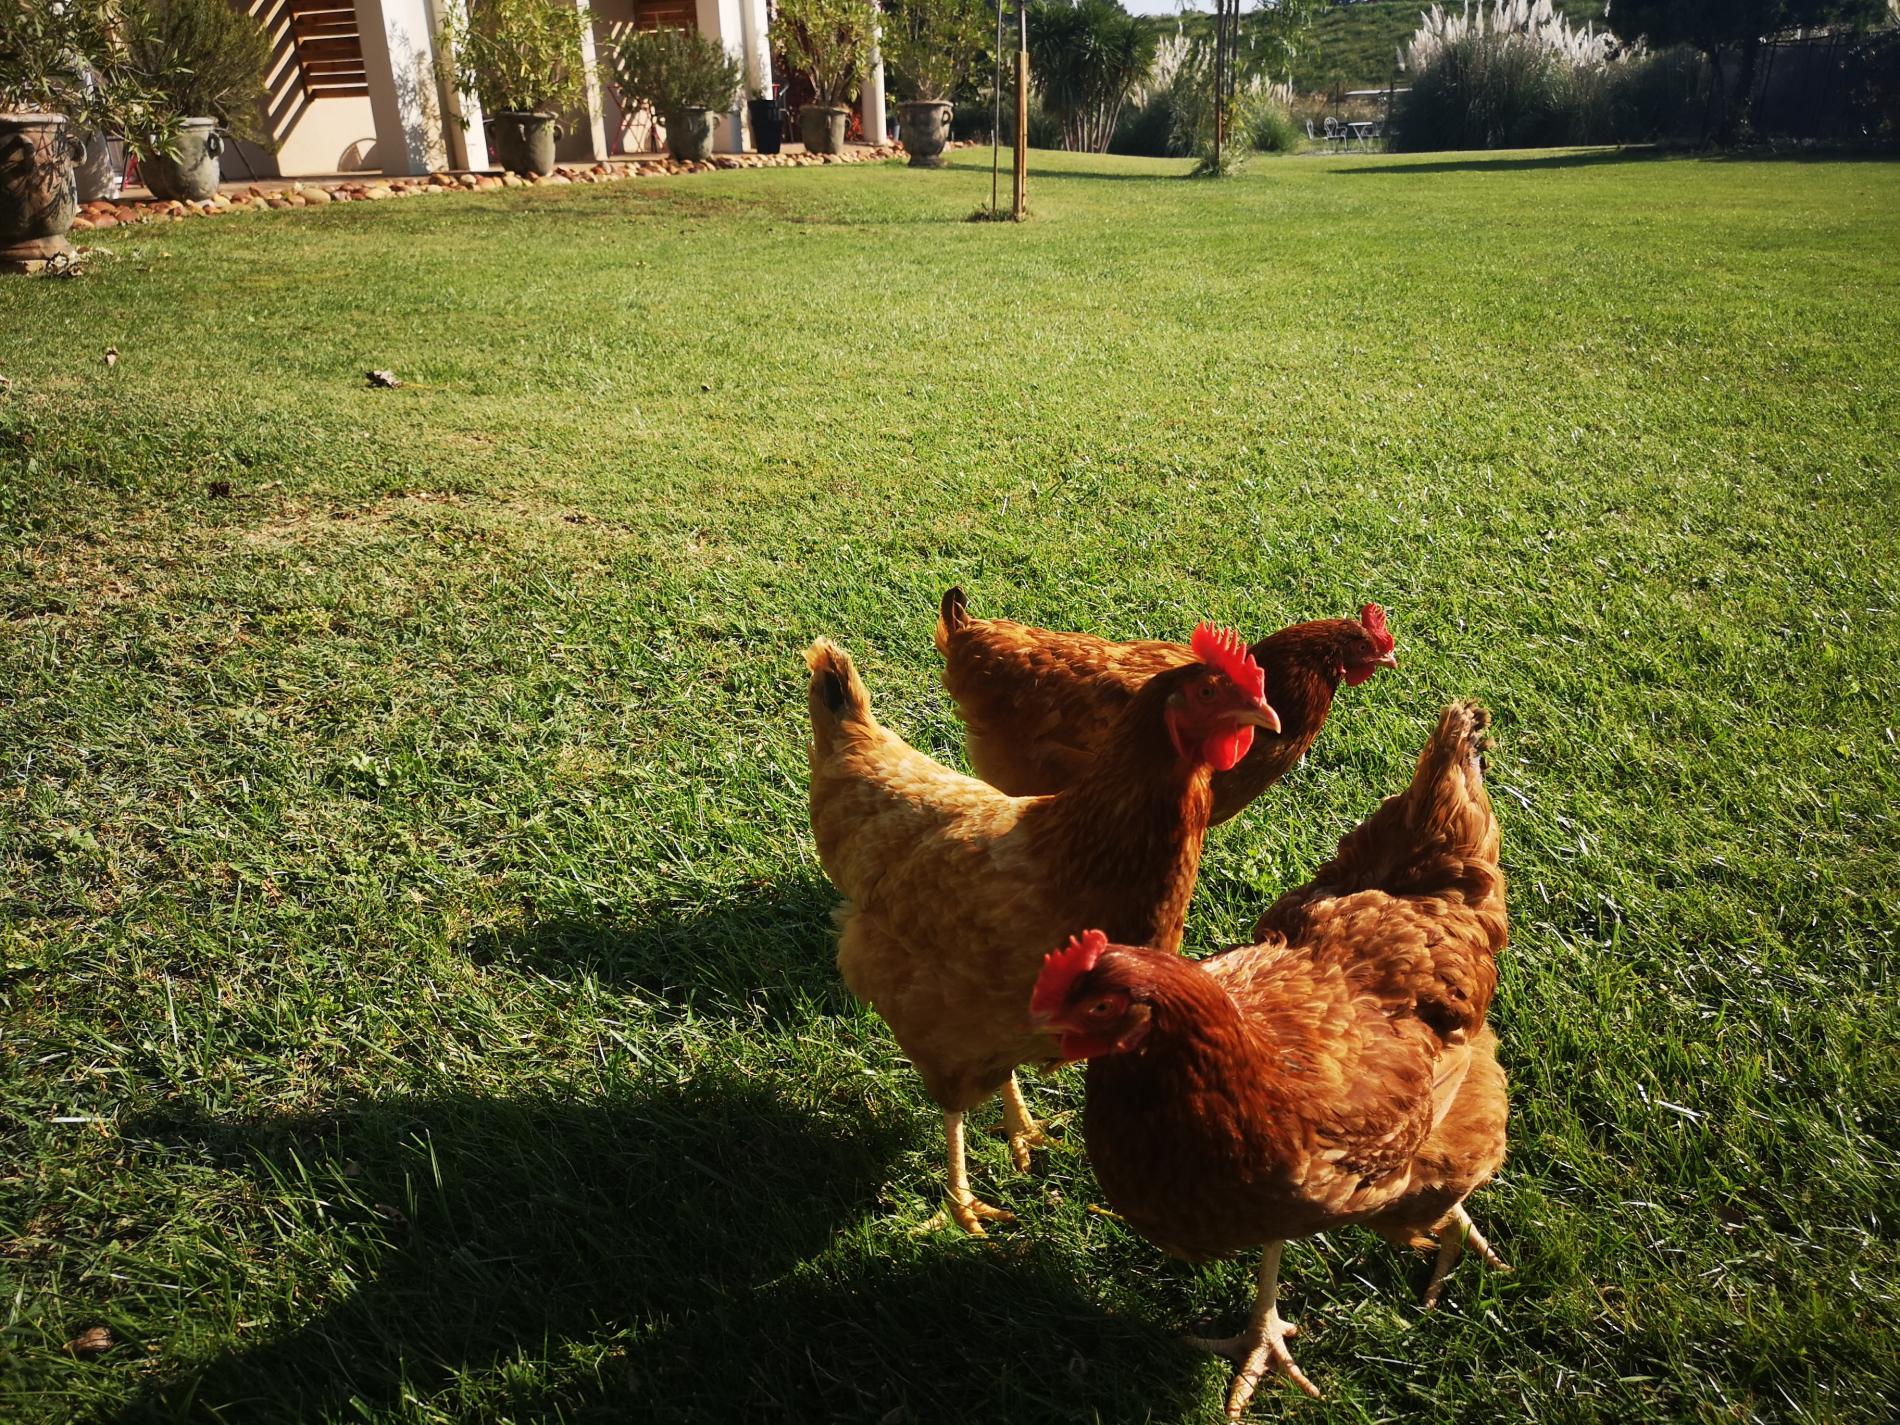 Nos 3 poules sont en libertés dans notre jardin